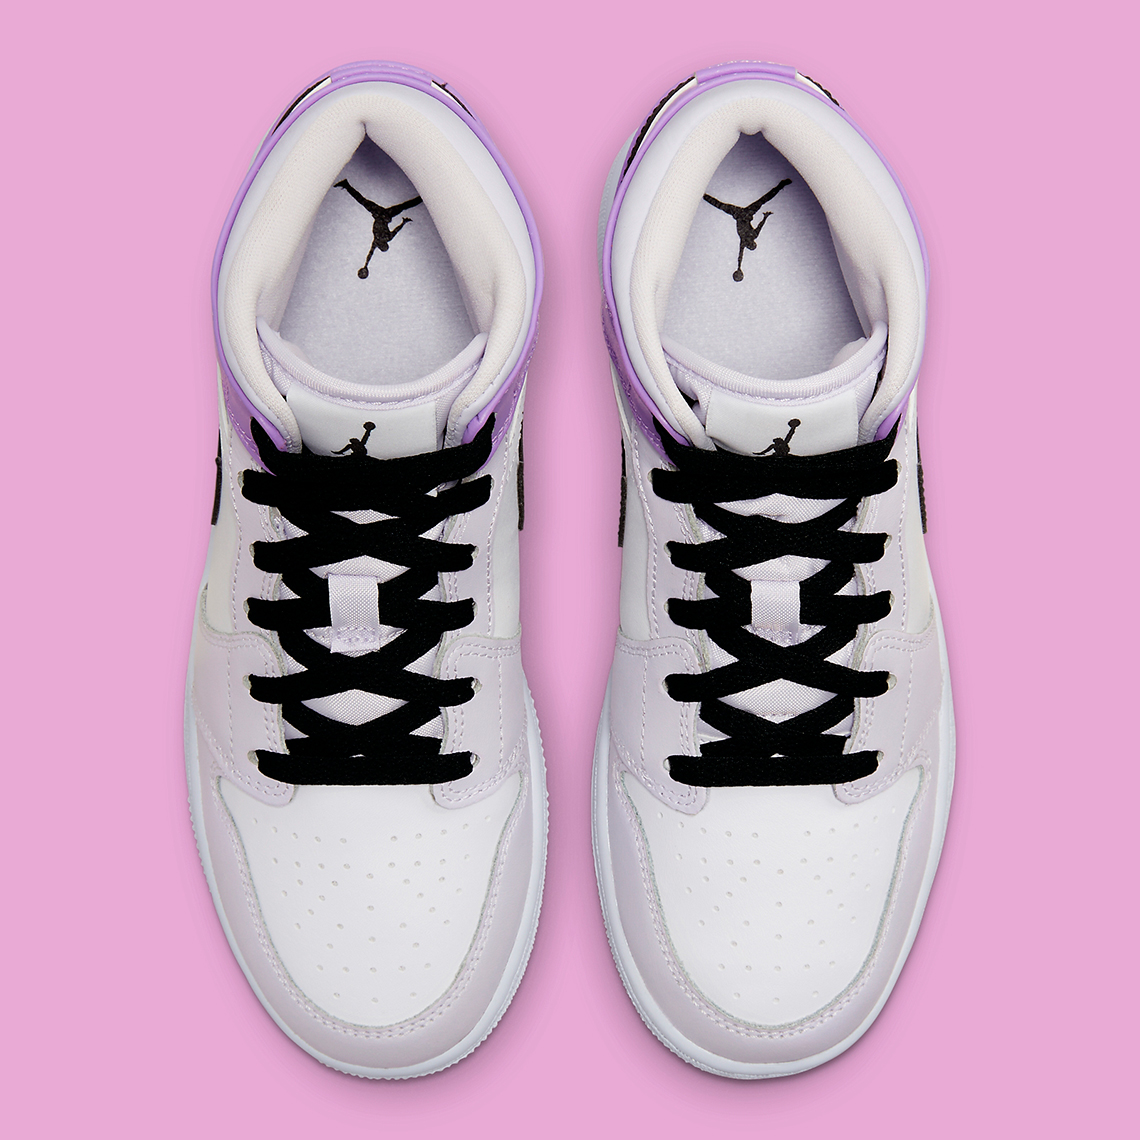 Jordan 5 retro metallic white 2015 136027-130 sz 12 Gs Pink Lavender Dq8423 501 8